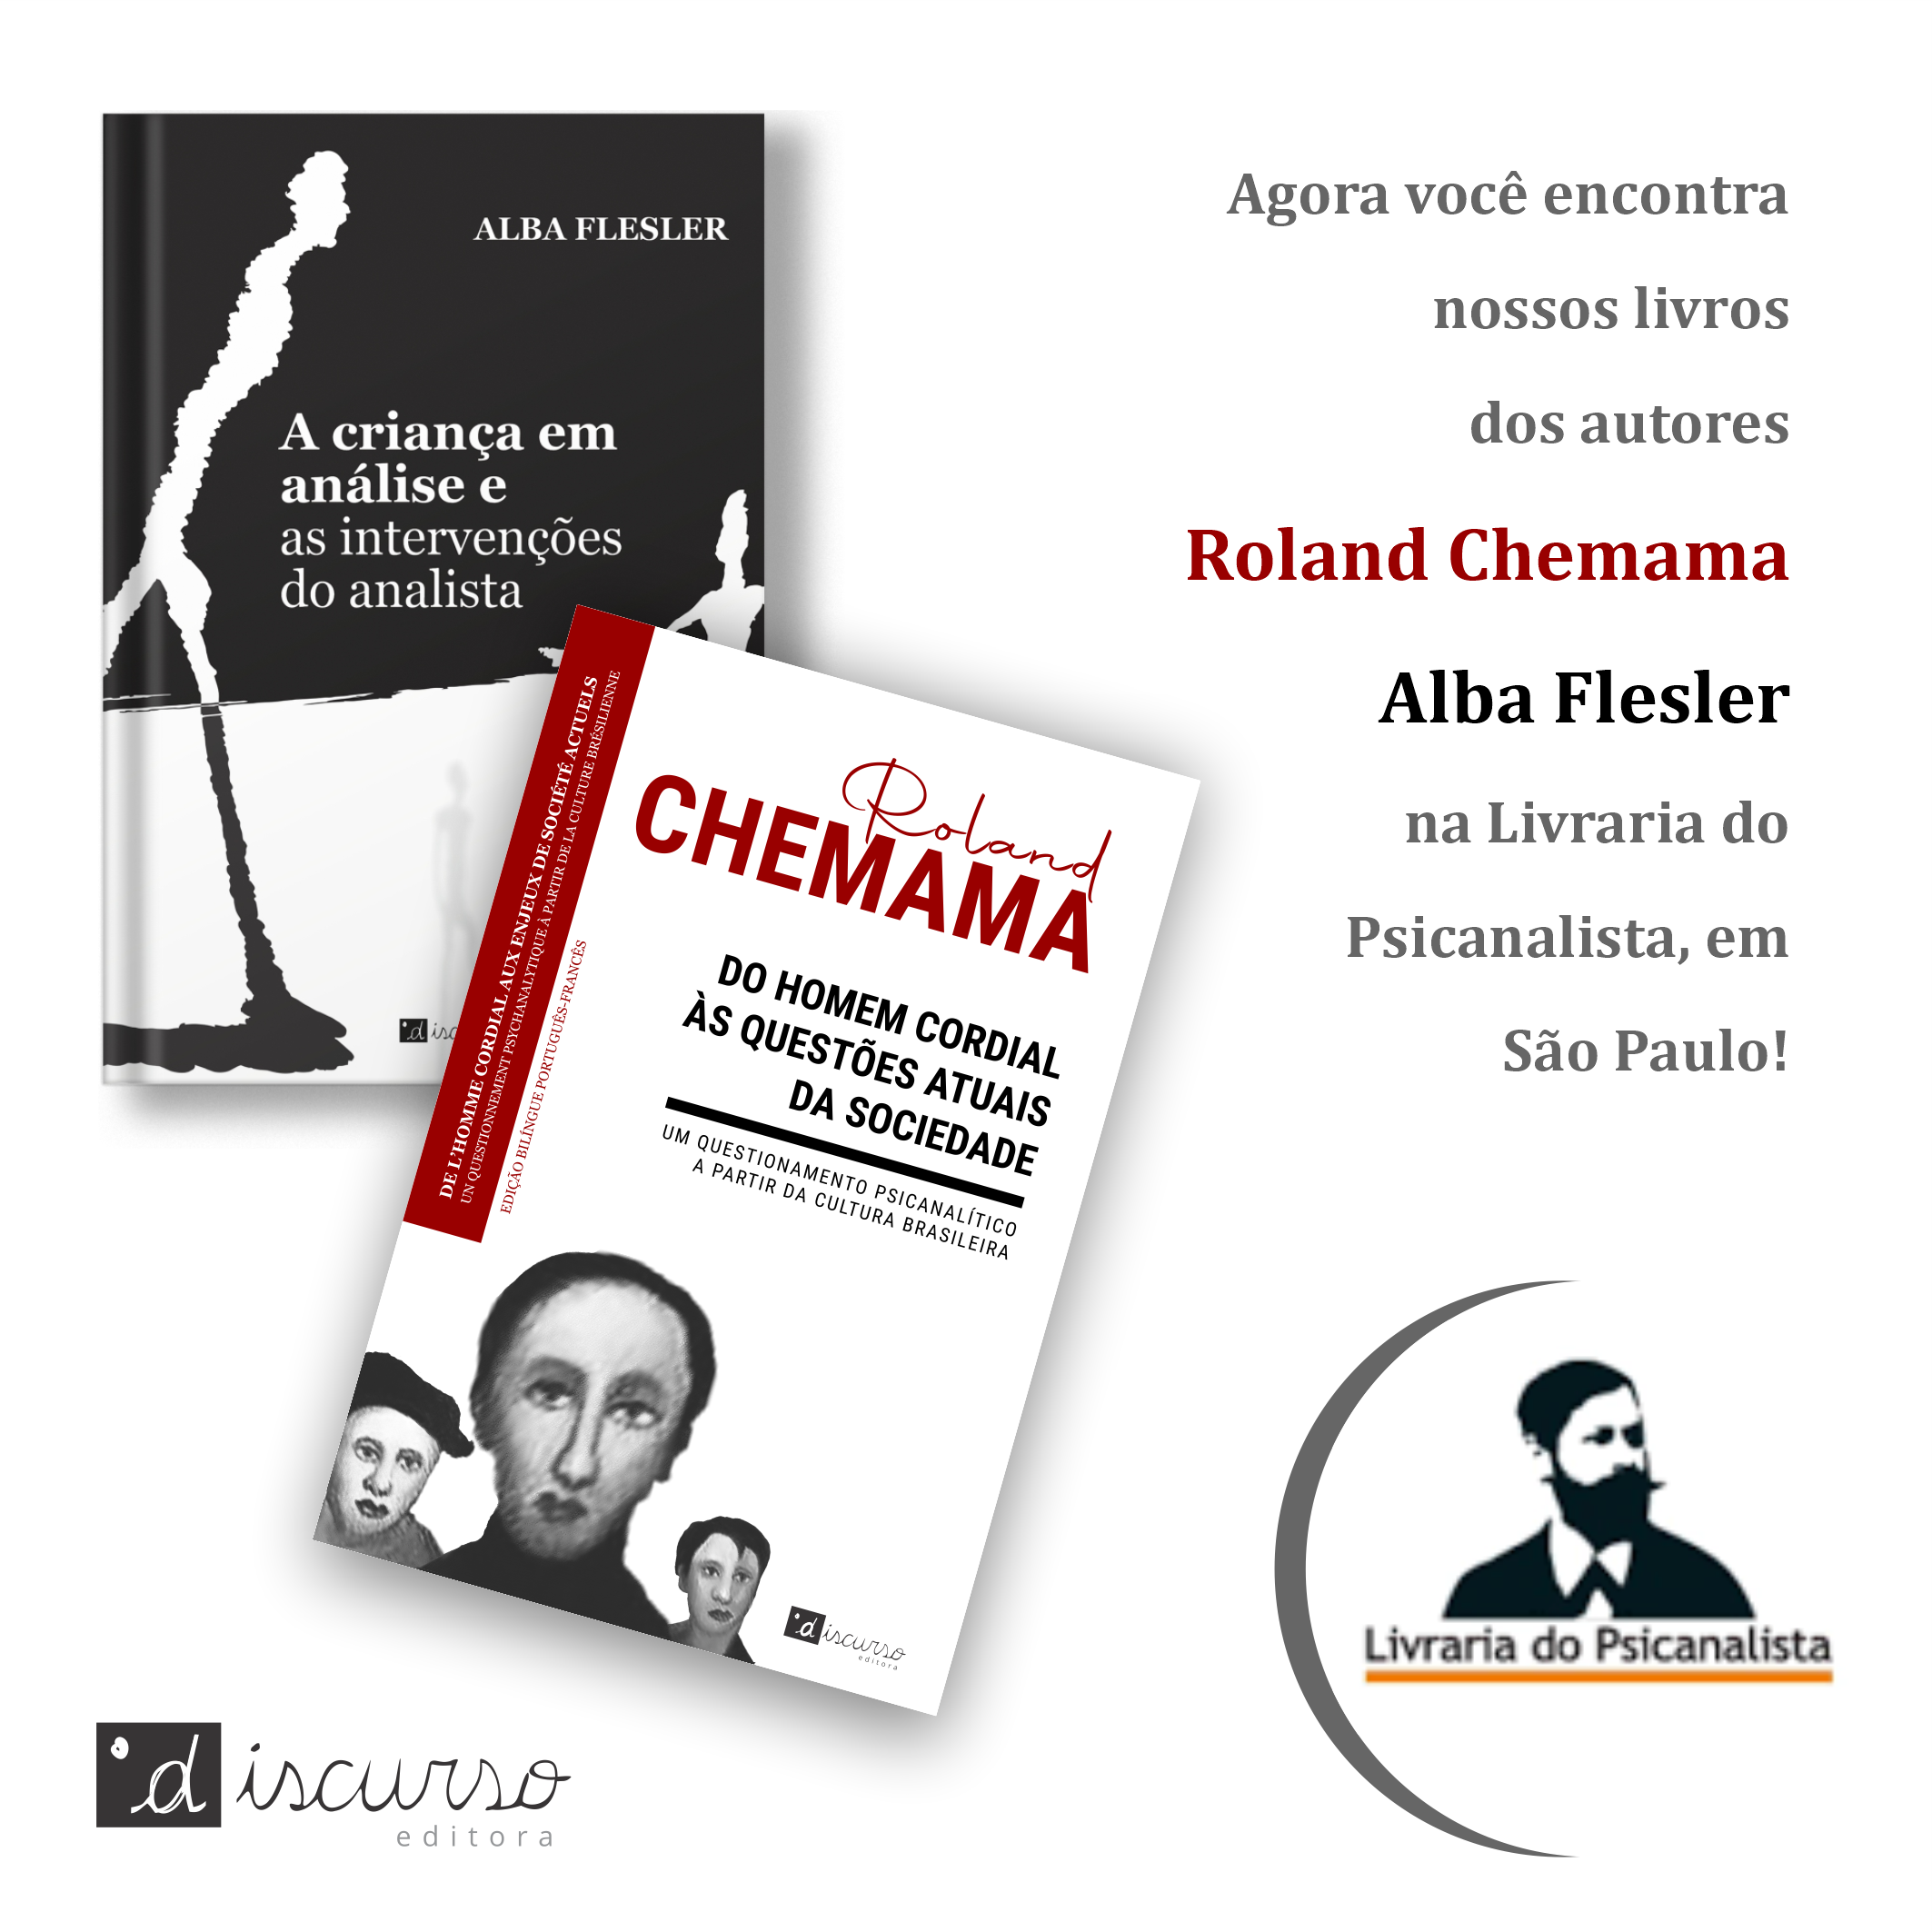 Roland Chemama e Alba Flesler na Livraria do Psicanalista em São Paulo